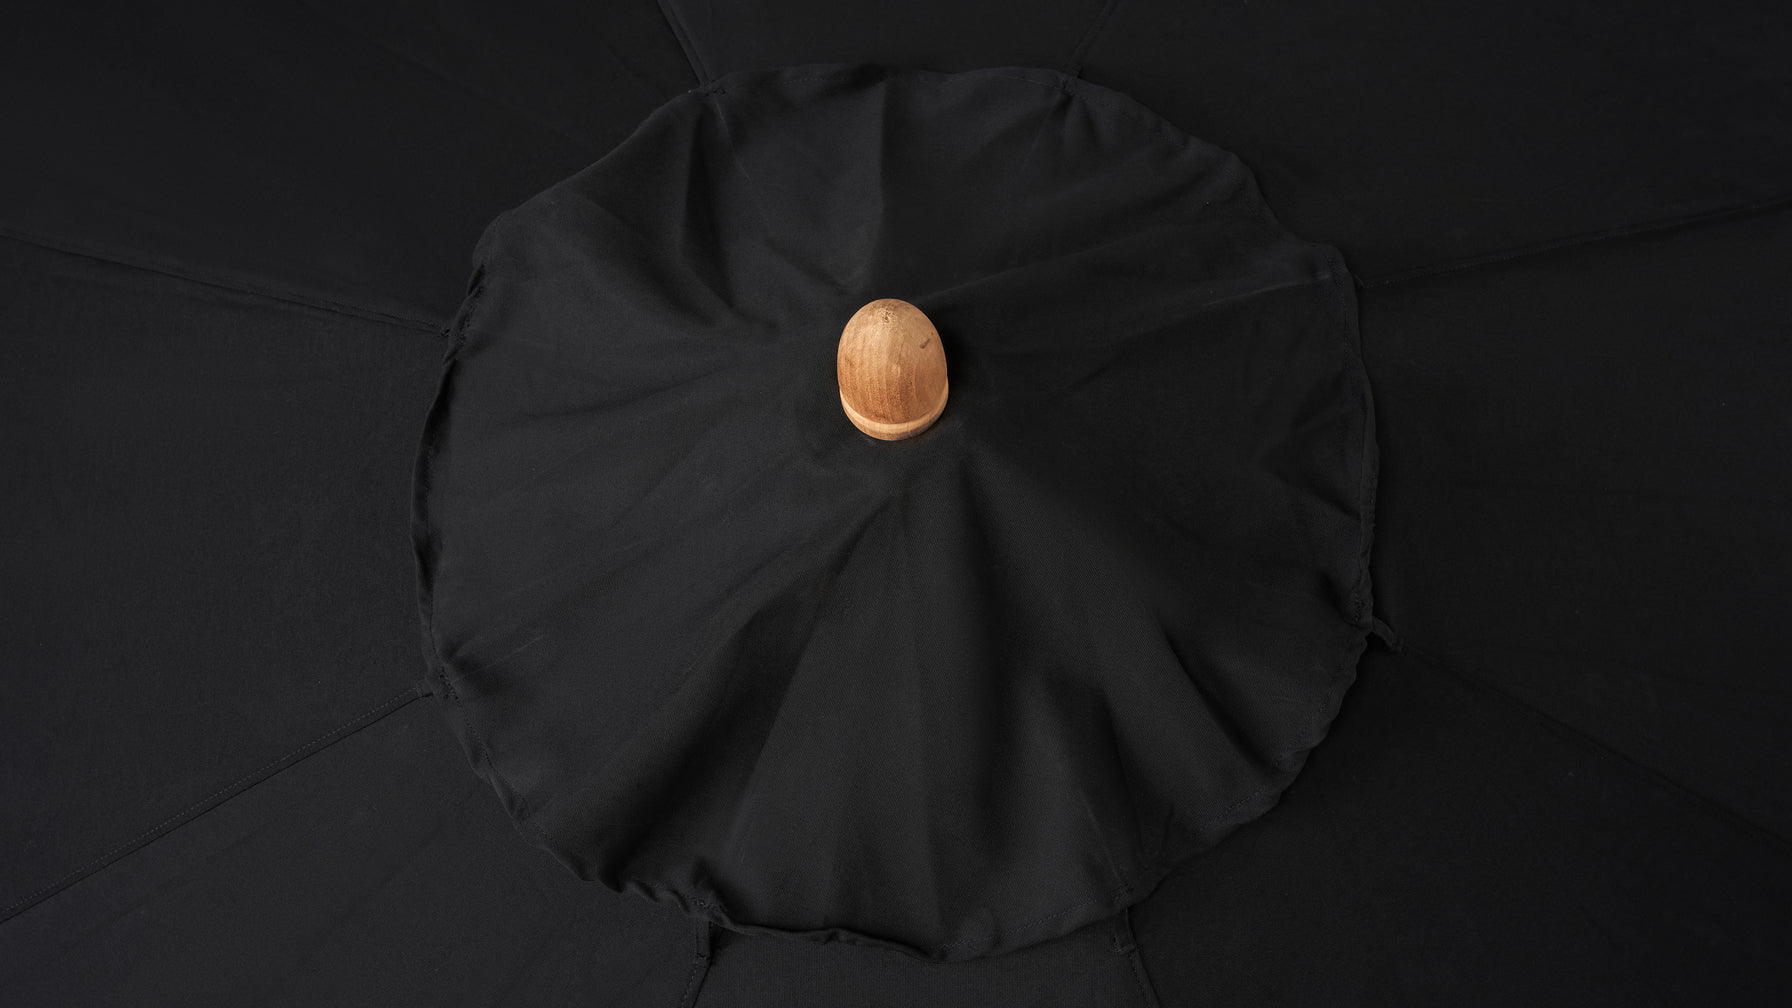 Capri Outdoor Umbrella, Black Sand - Image 4